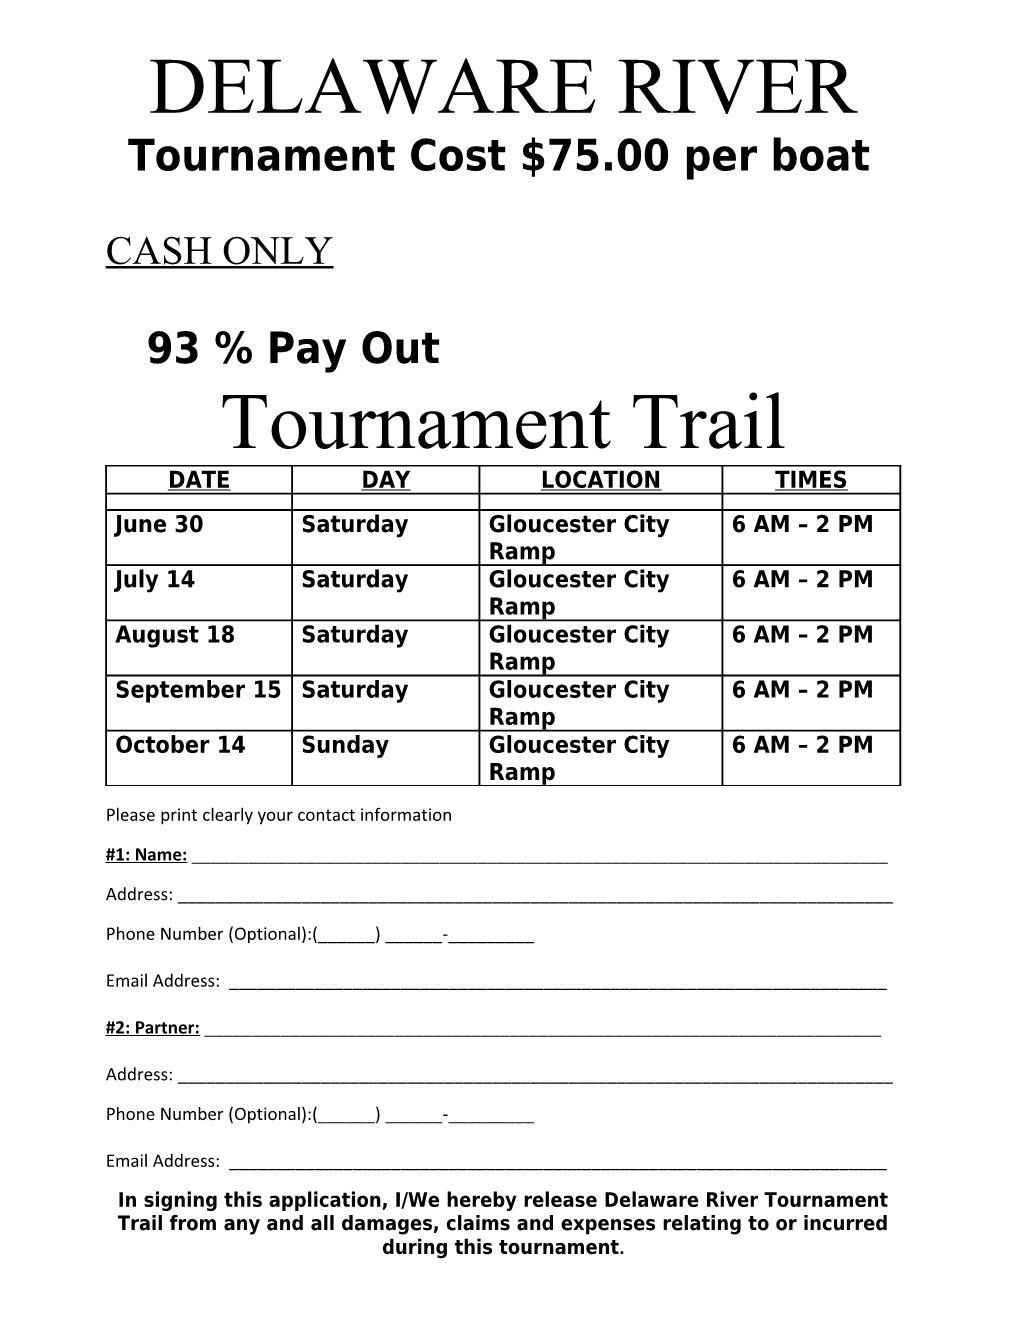 Tournament Cost $75.00 Per Boat